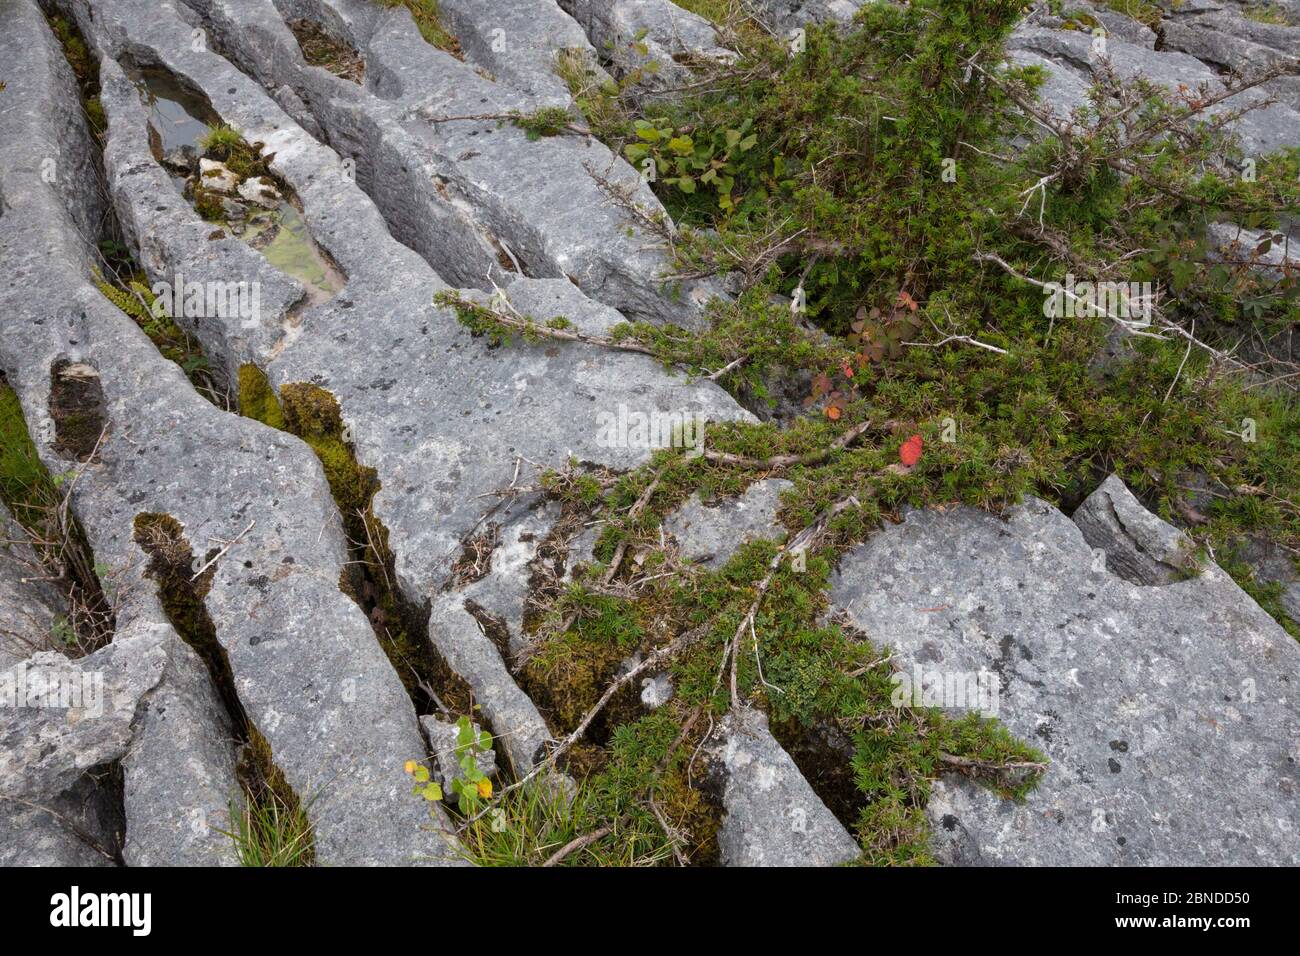 Acrobazie albero di tasso (Taxus baccata) che cresce in pietra calcarea, Gait Barrows National Nature Reserve, Lancashire, Regno Unito. Settembre. Foto Stock